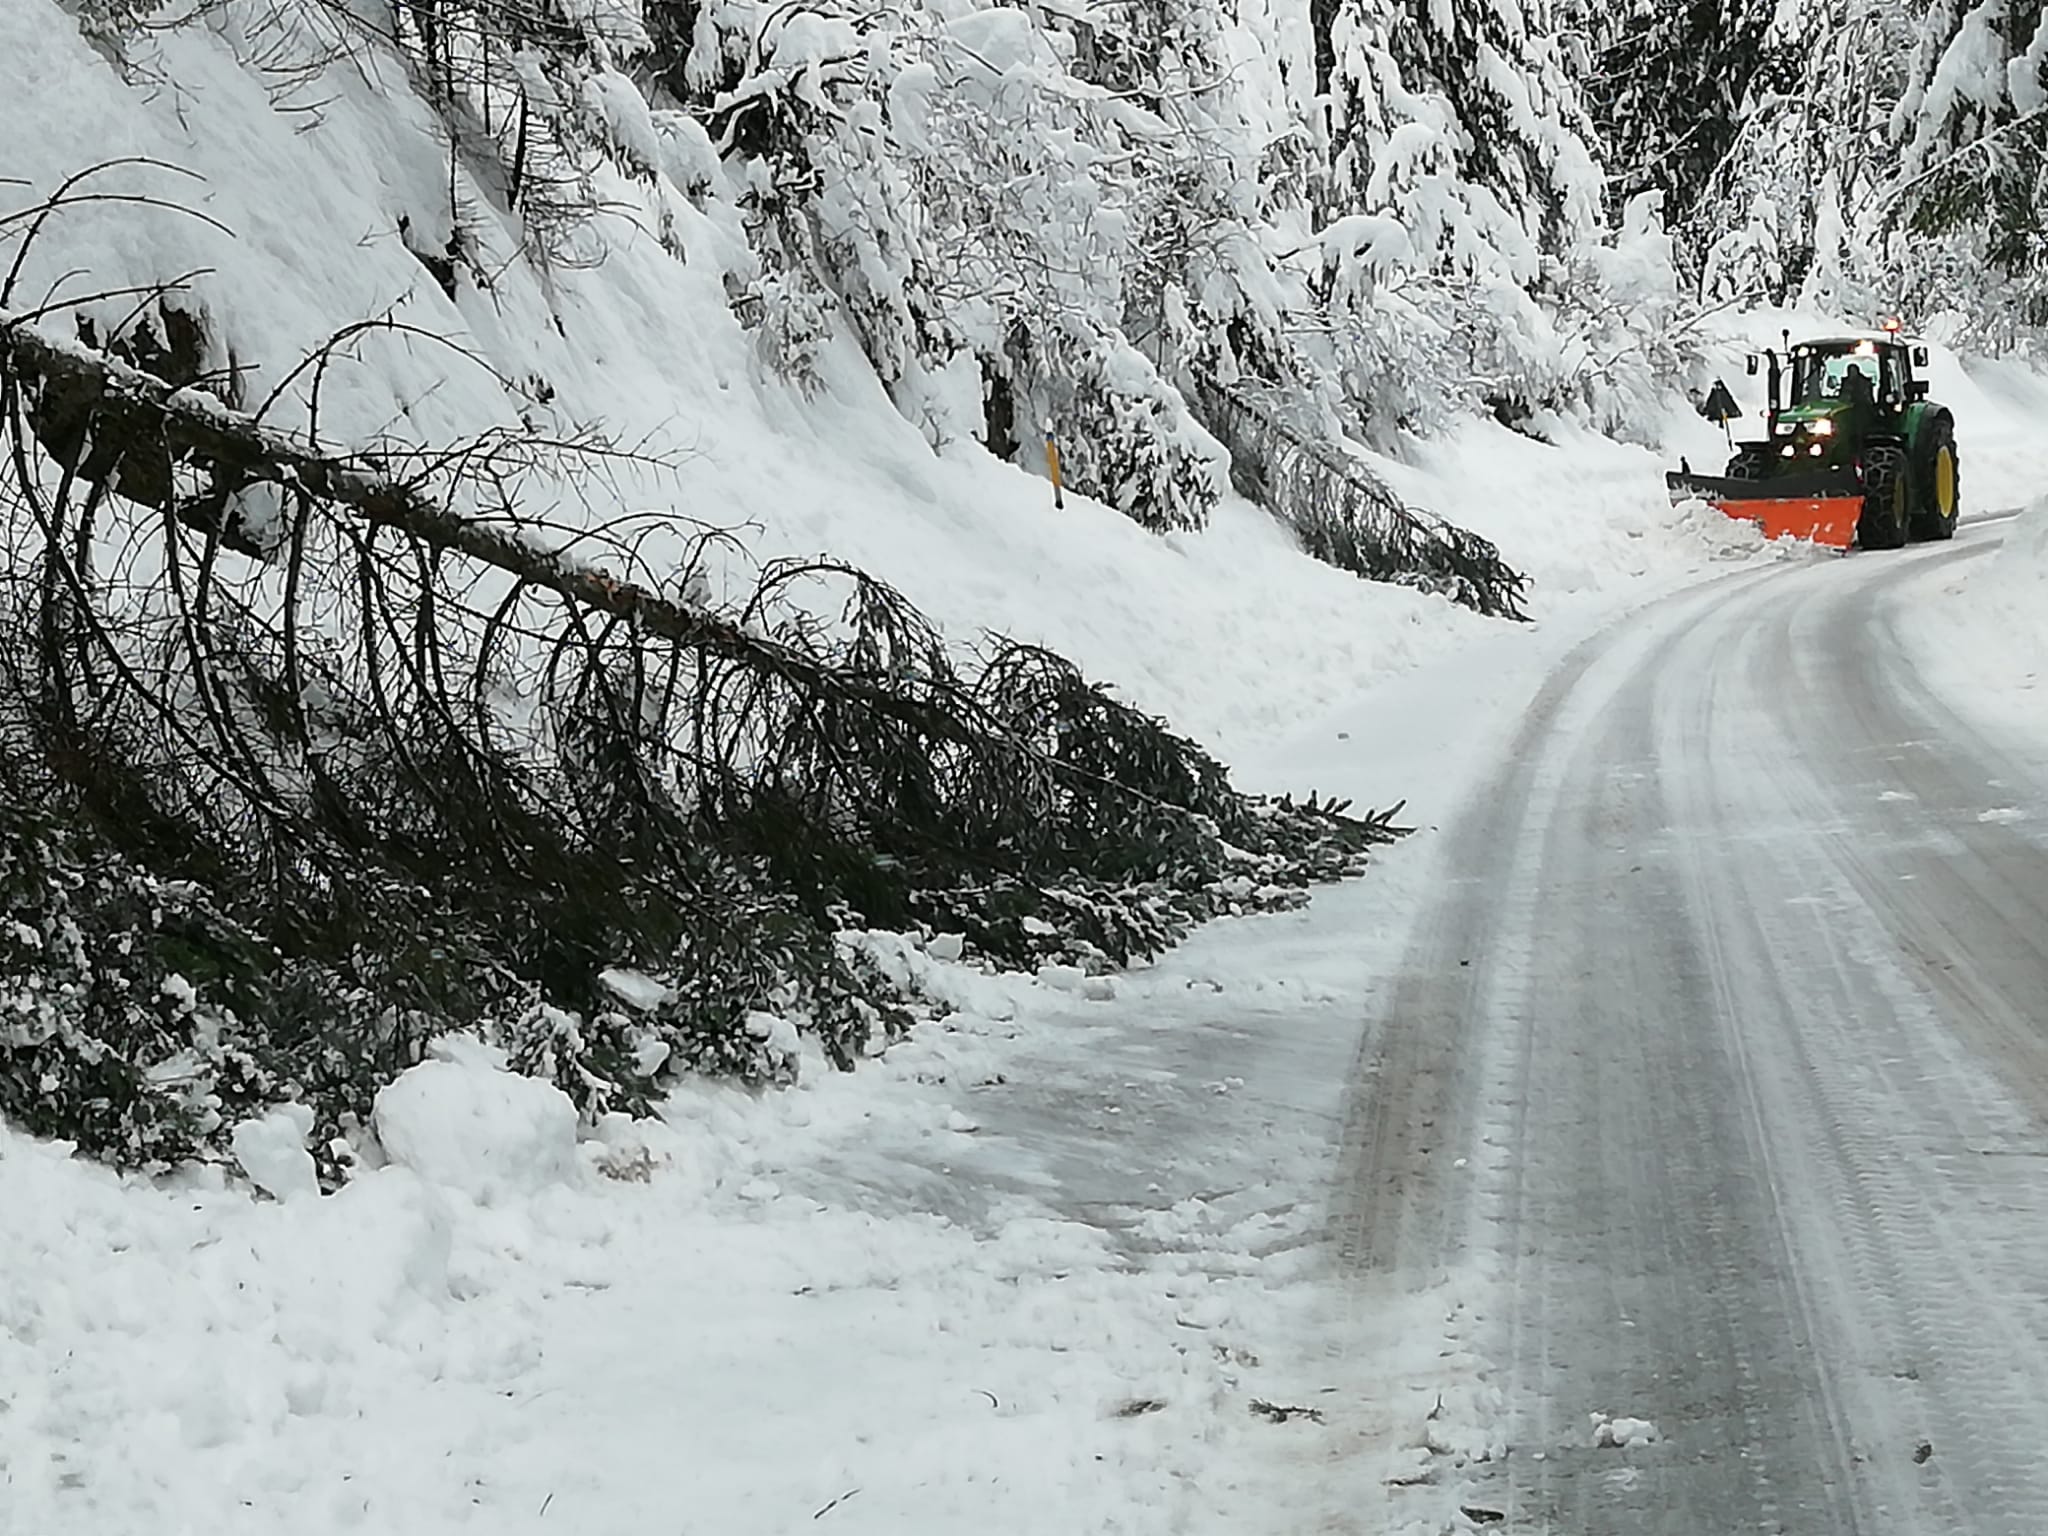 Emergenza neve, situazione più critica a Roana. Zaia: "Pronto lo stato di crisi" - VIDEO e GALLERY